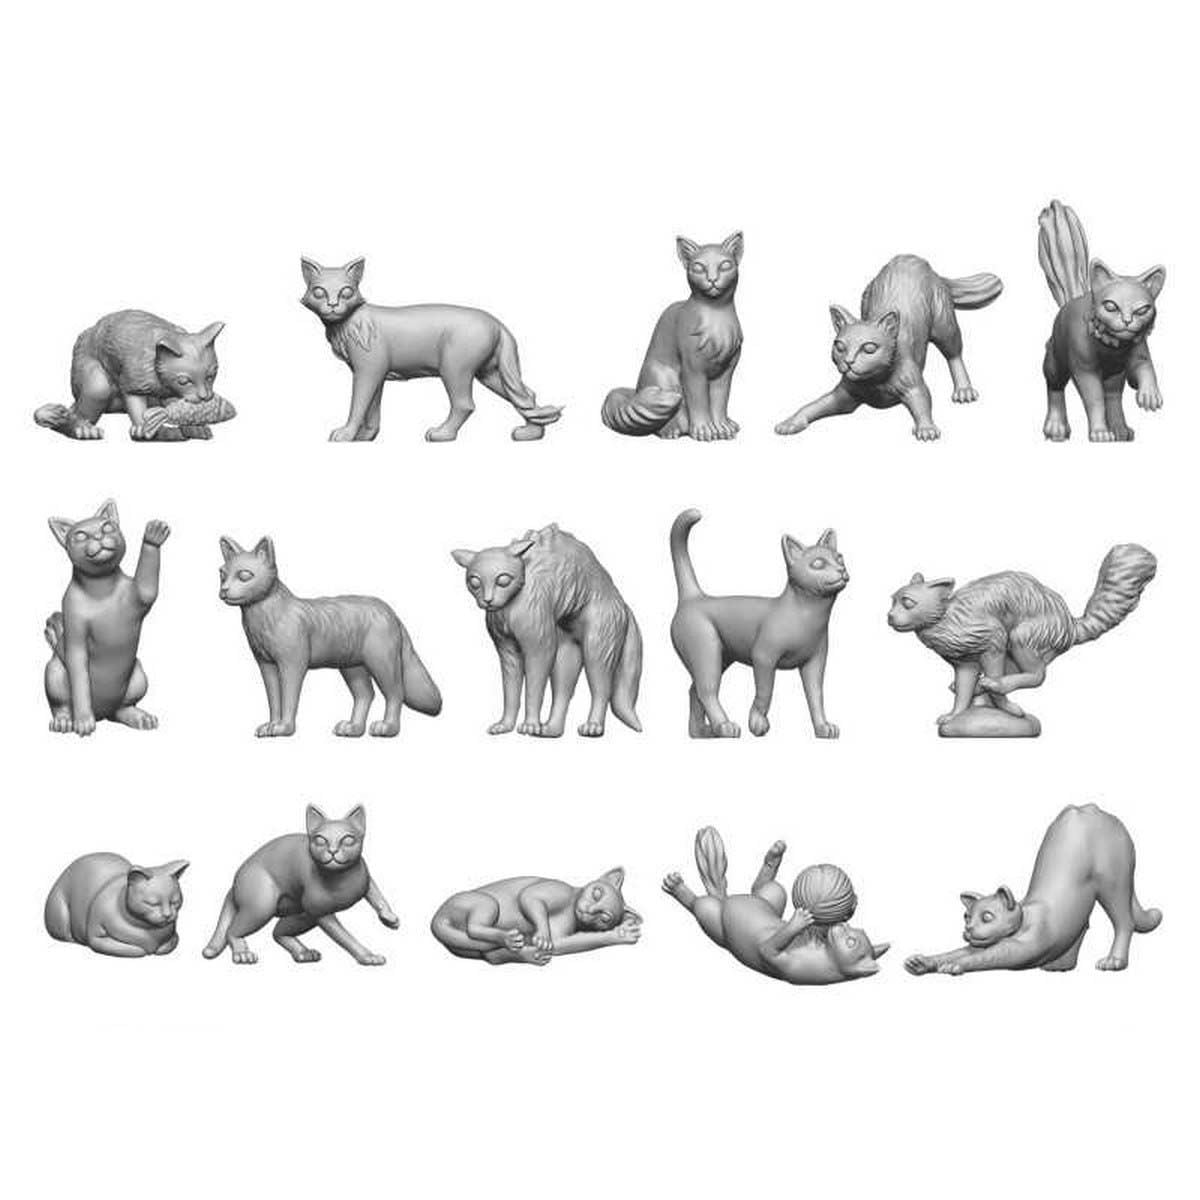 3D Printed Set - Cats